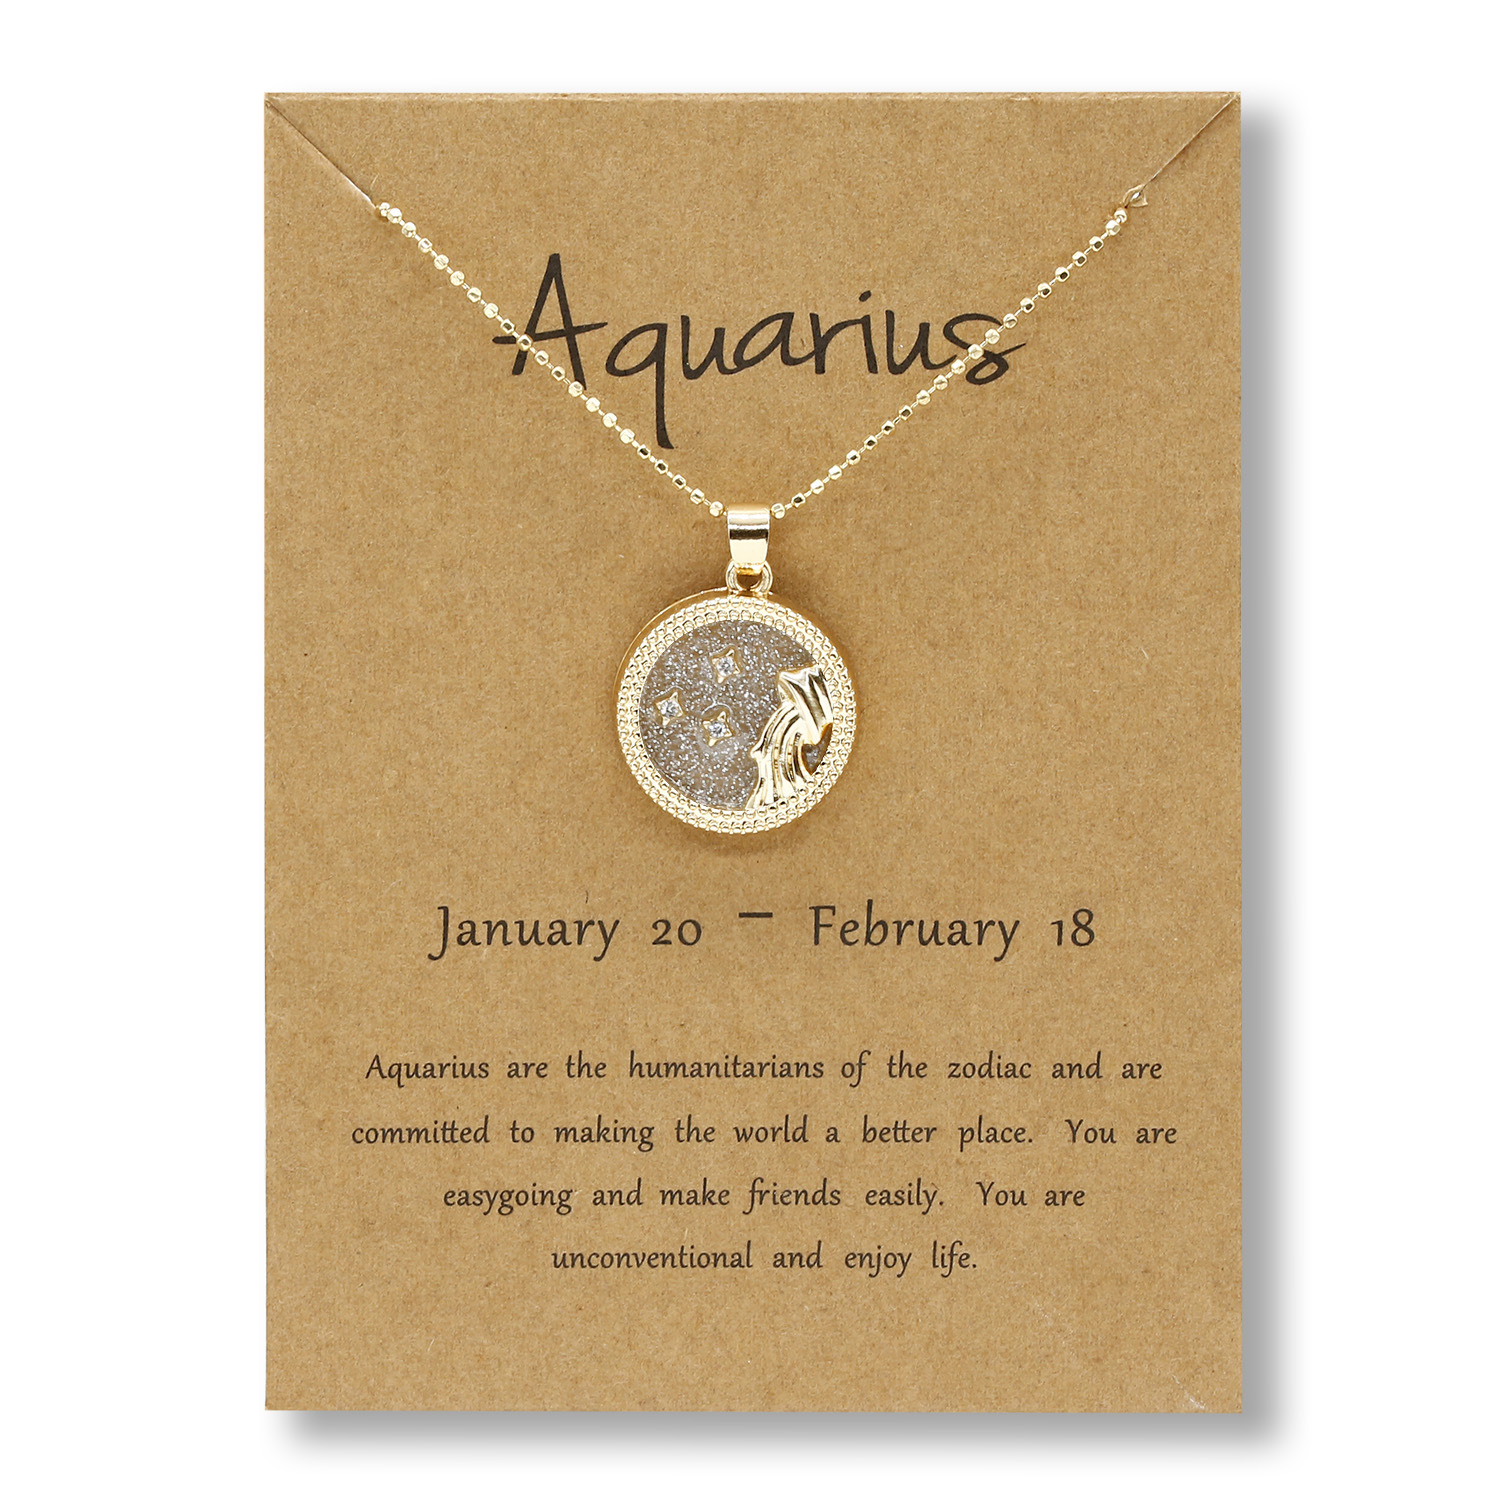 1:Aquarius (Golden Day)